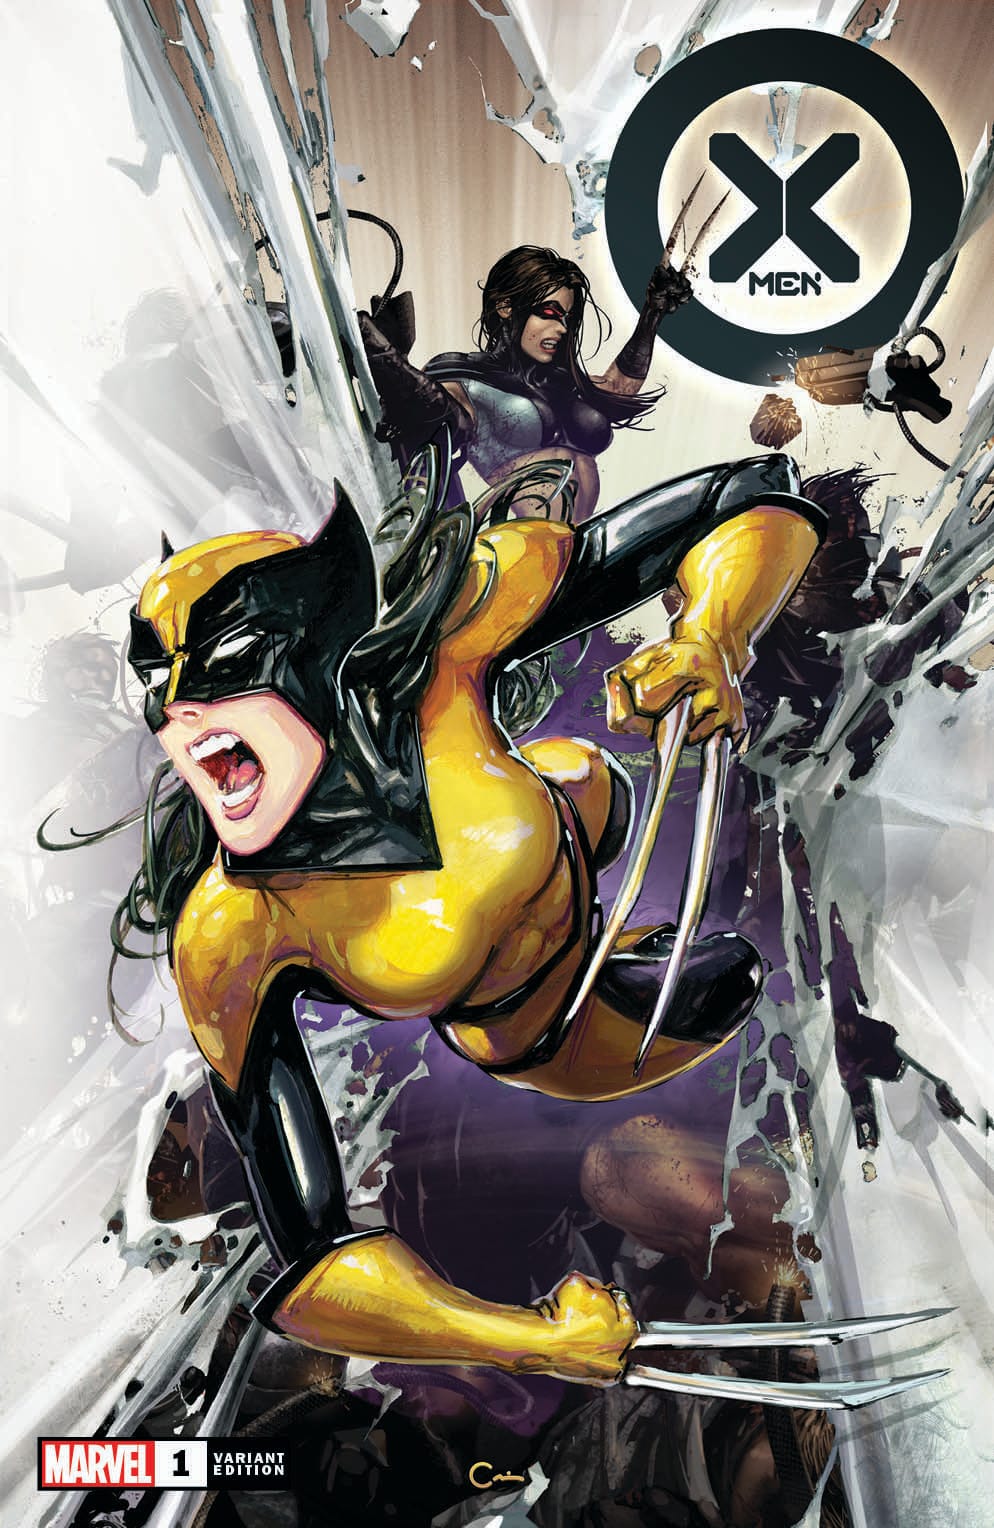 X-Men 1 Clayton Crain X-23 Sketch Cover Series Virgin Variant DC Comics Marvel Comics X-Men Batman East Side Comics Virgin Exclusive cgc signed ss comics